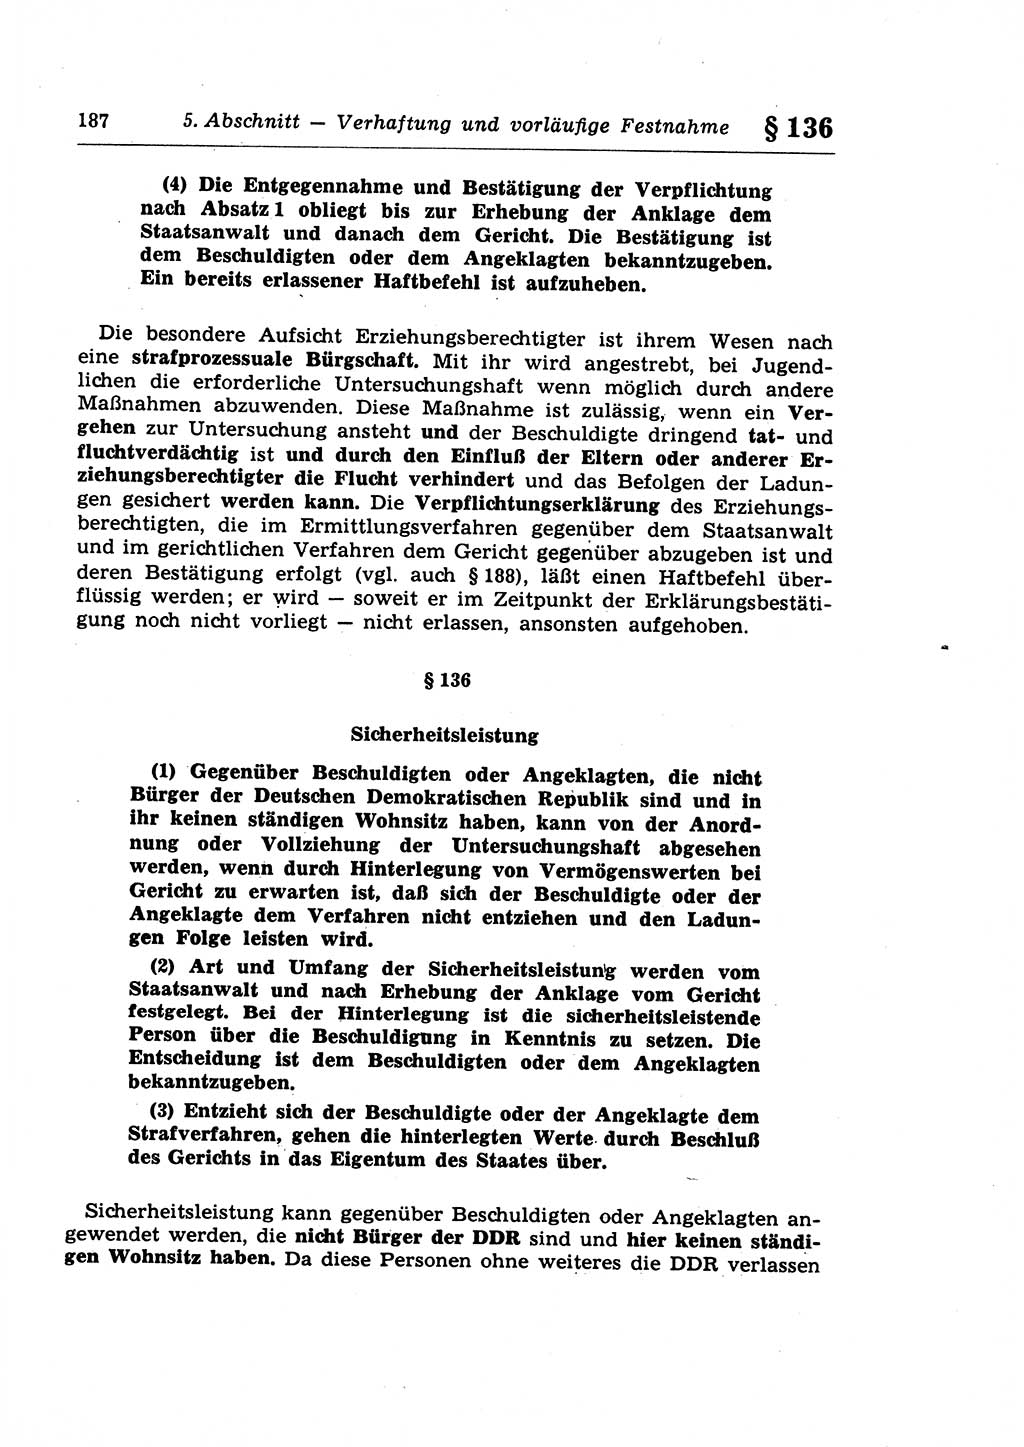 Strafprozeßrecht der DDR (Deutsche Demokratische Republik), Lehrkommentar zur Strafprozeßordnung (StPO) 1968, Seite 187 (Strafprozeßr. DDR Lehrkomm. StPO 19688, S. 187)